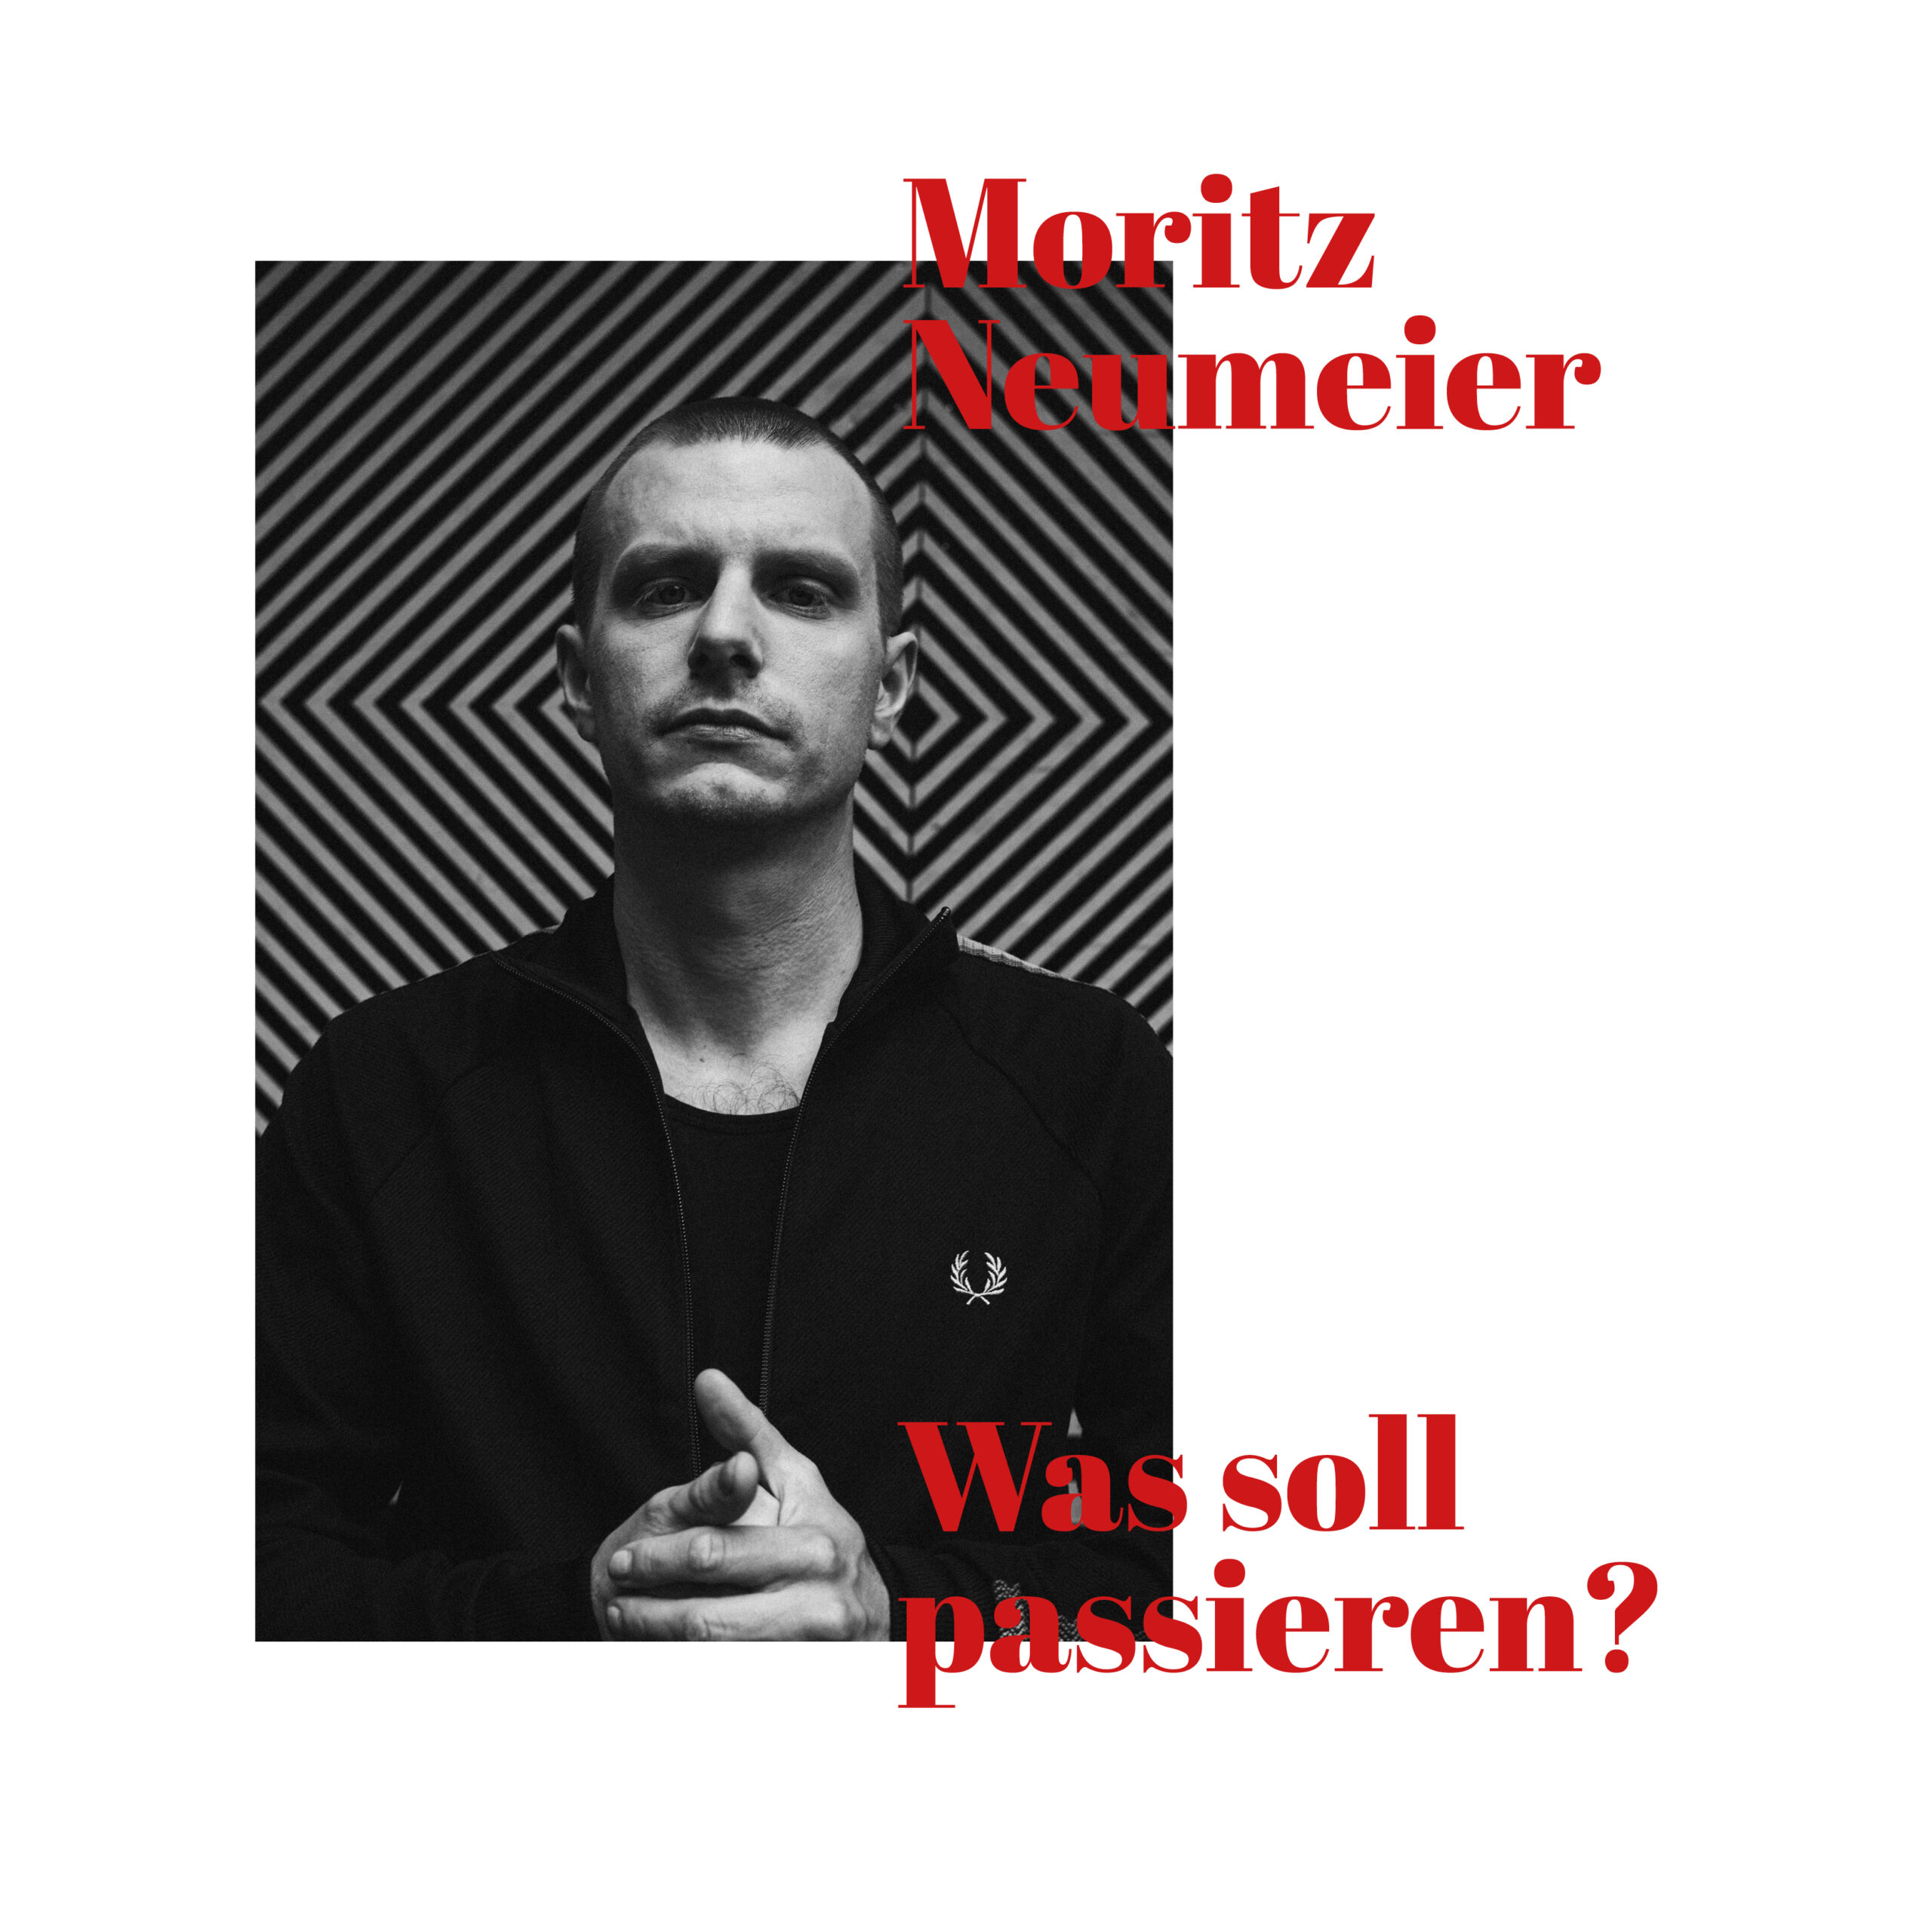 Moritz Neumeier Was soll passieren live im FZW in Dortmund 2025.